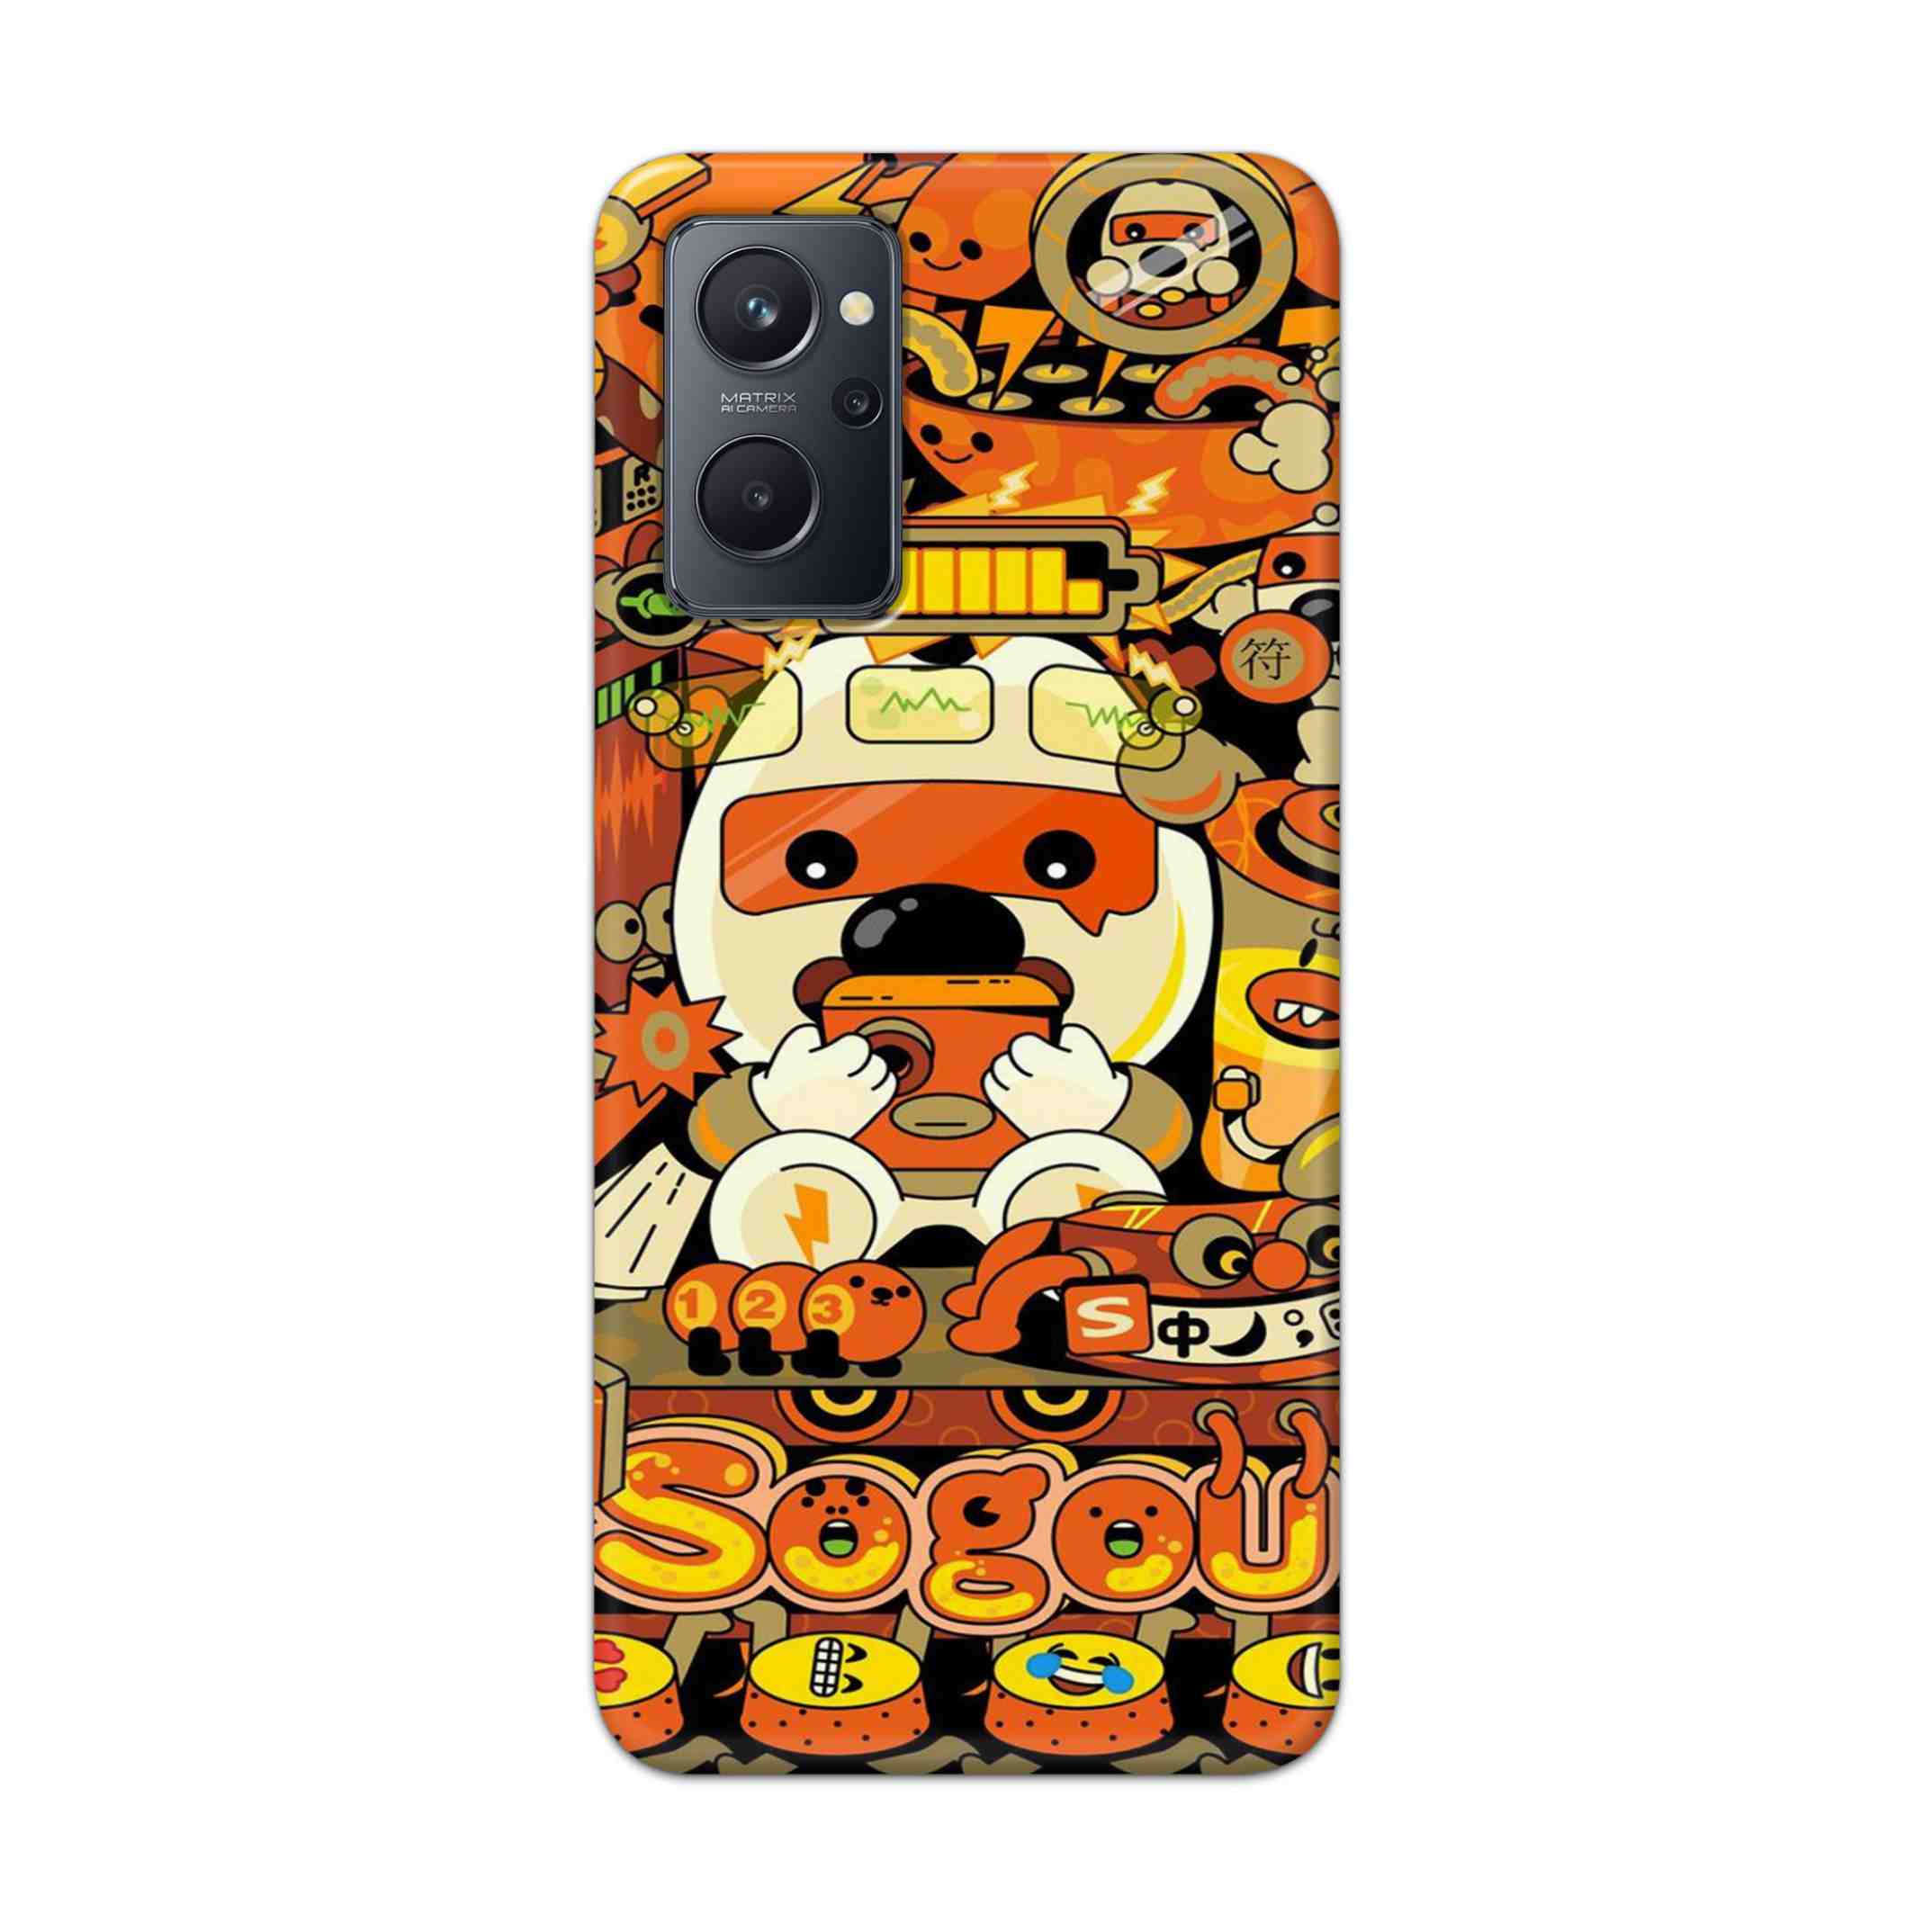 Buy Sogou Hard Back Mobile Phone Case Cover For Realme 9i Online